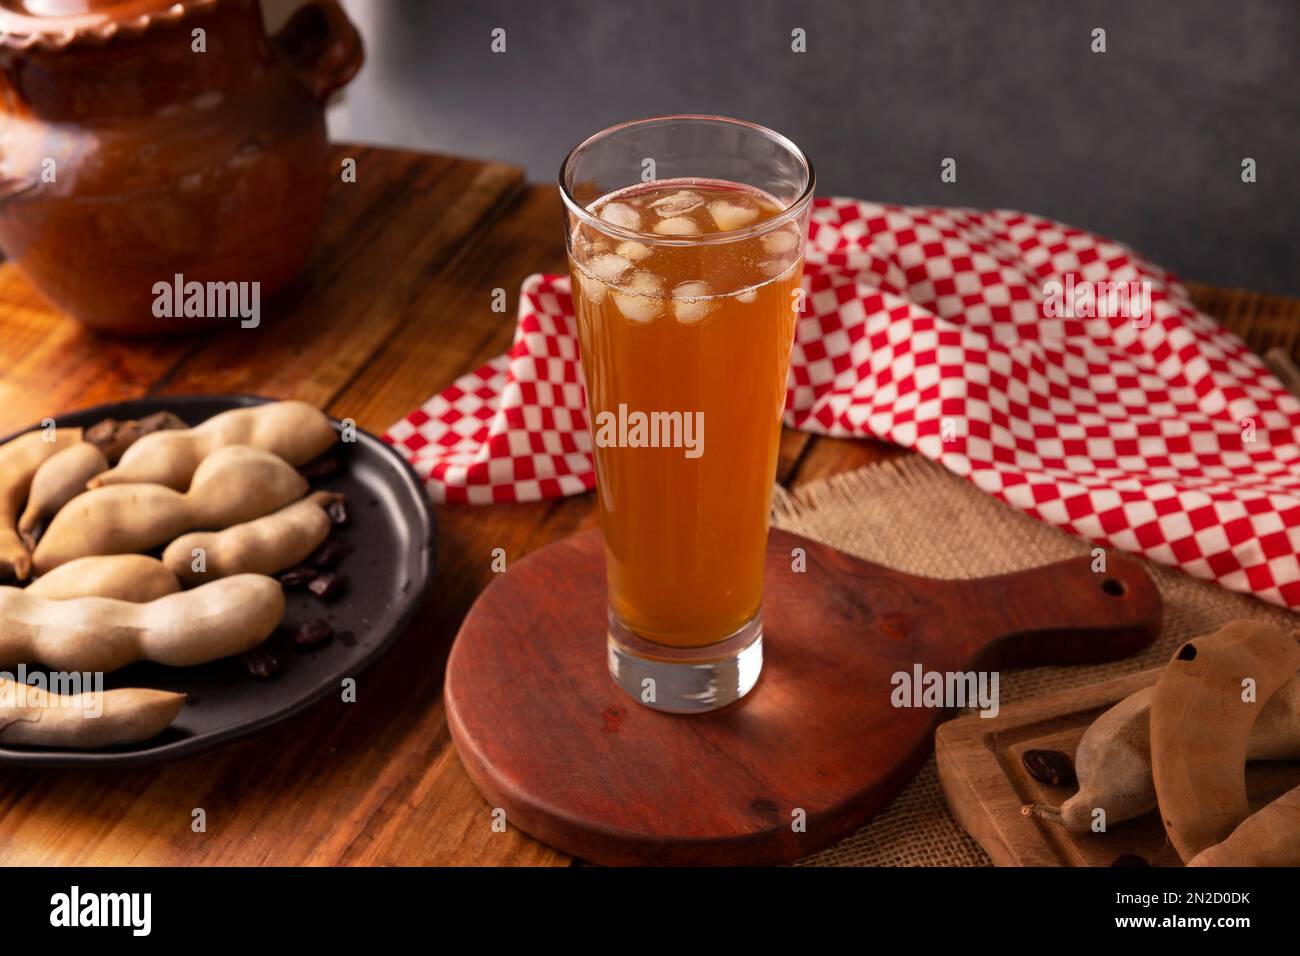 La boisson Tamarind est l'une des « Aguas Frescas » traditionnelles du Mexique. Boisson infusée à base de tamarin à laquelle les propriétés bénéfiques pour la santé sont attrib Banque D'Images